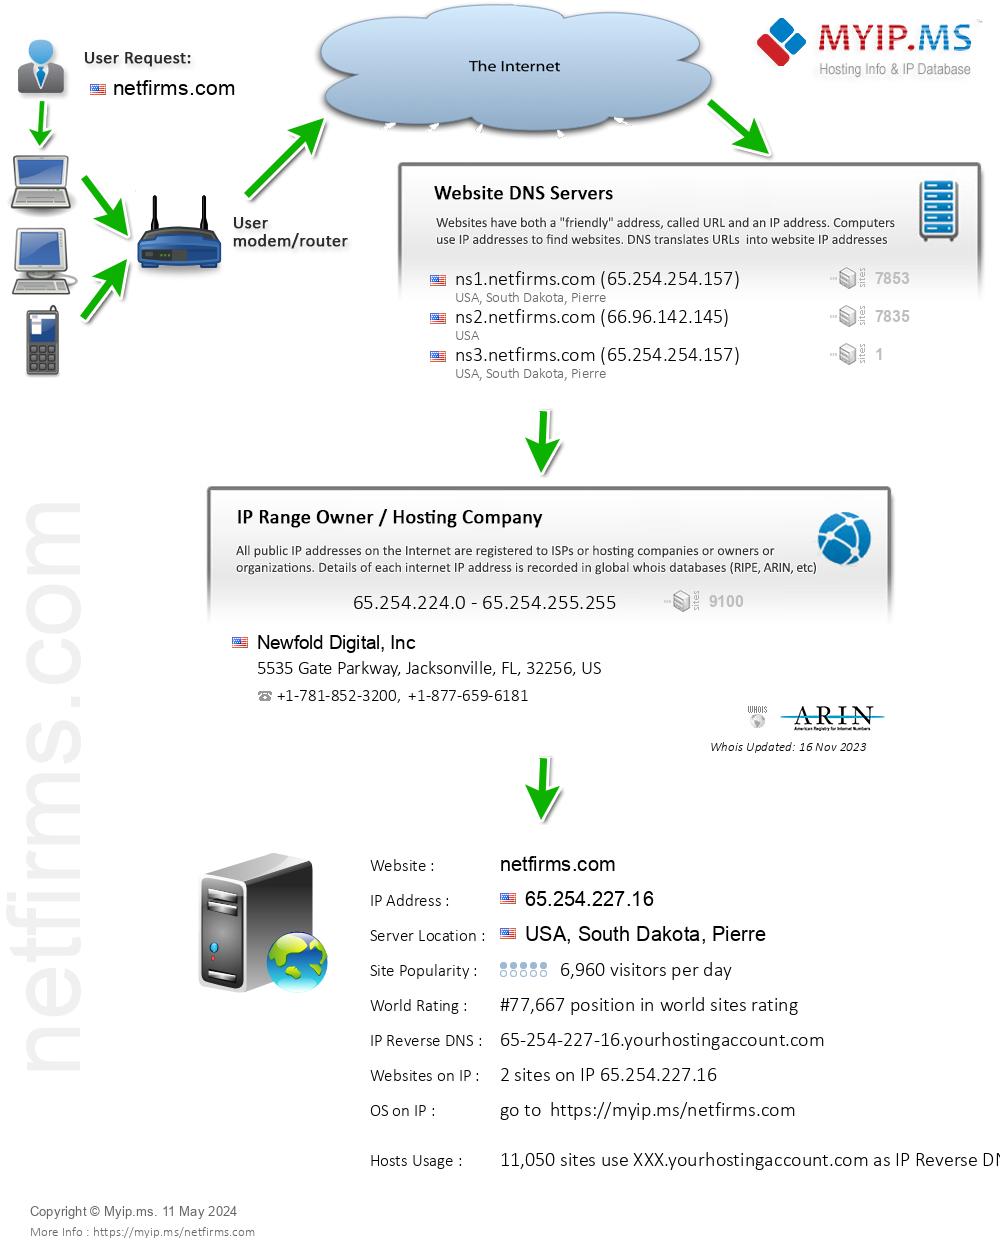 Netfirms.com - Website Hosting Visual IP Diagram